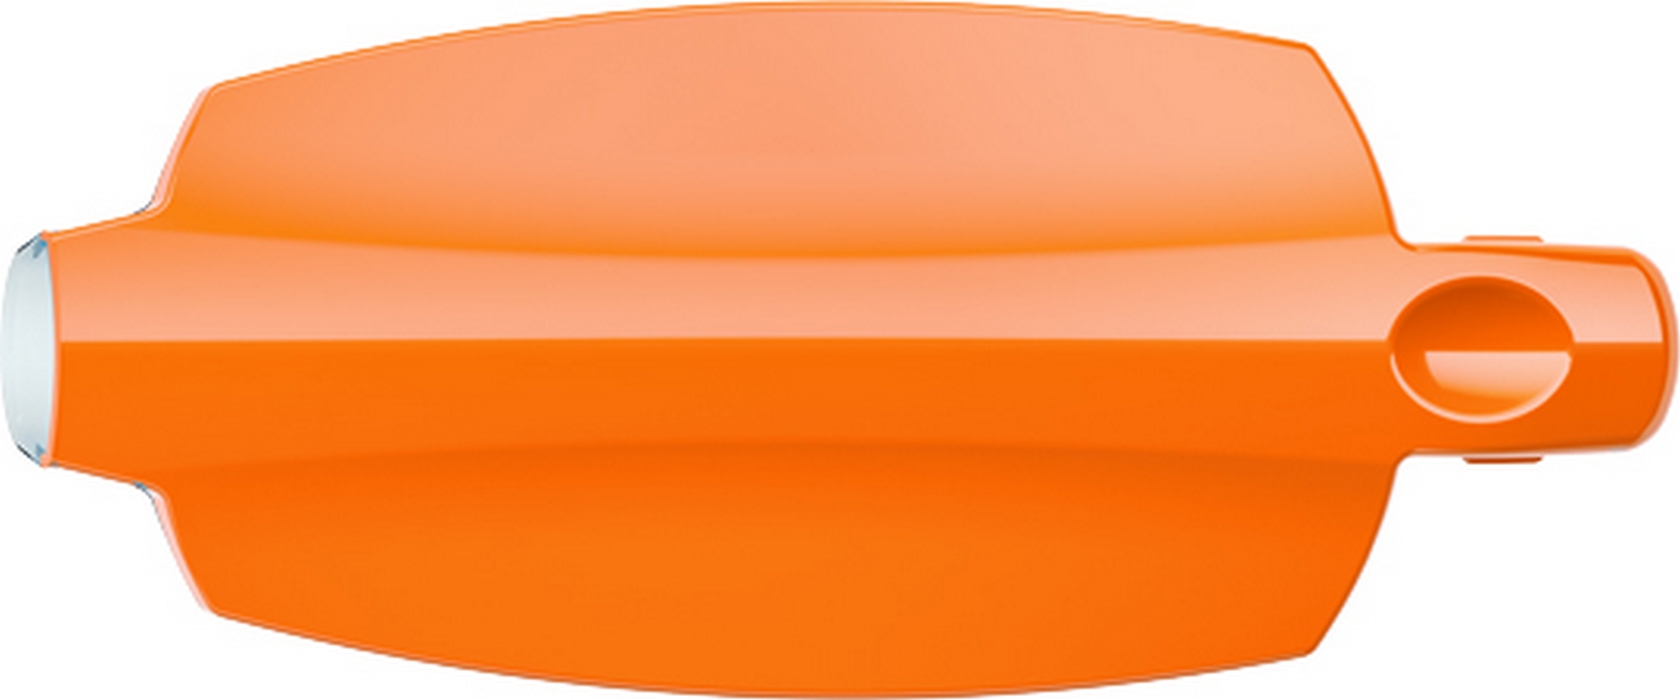 Фильтр для воды Aquaphor Лаки Оранжевый отзывы - изображения 5